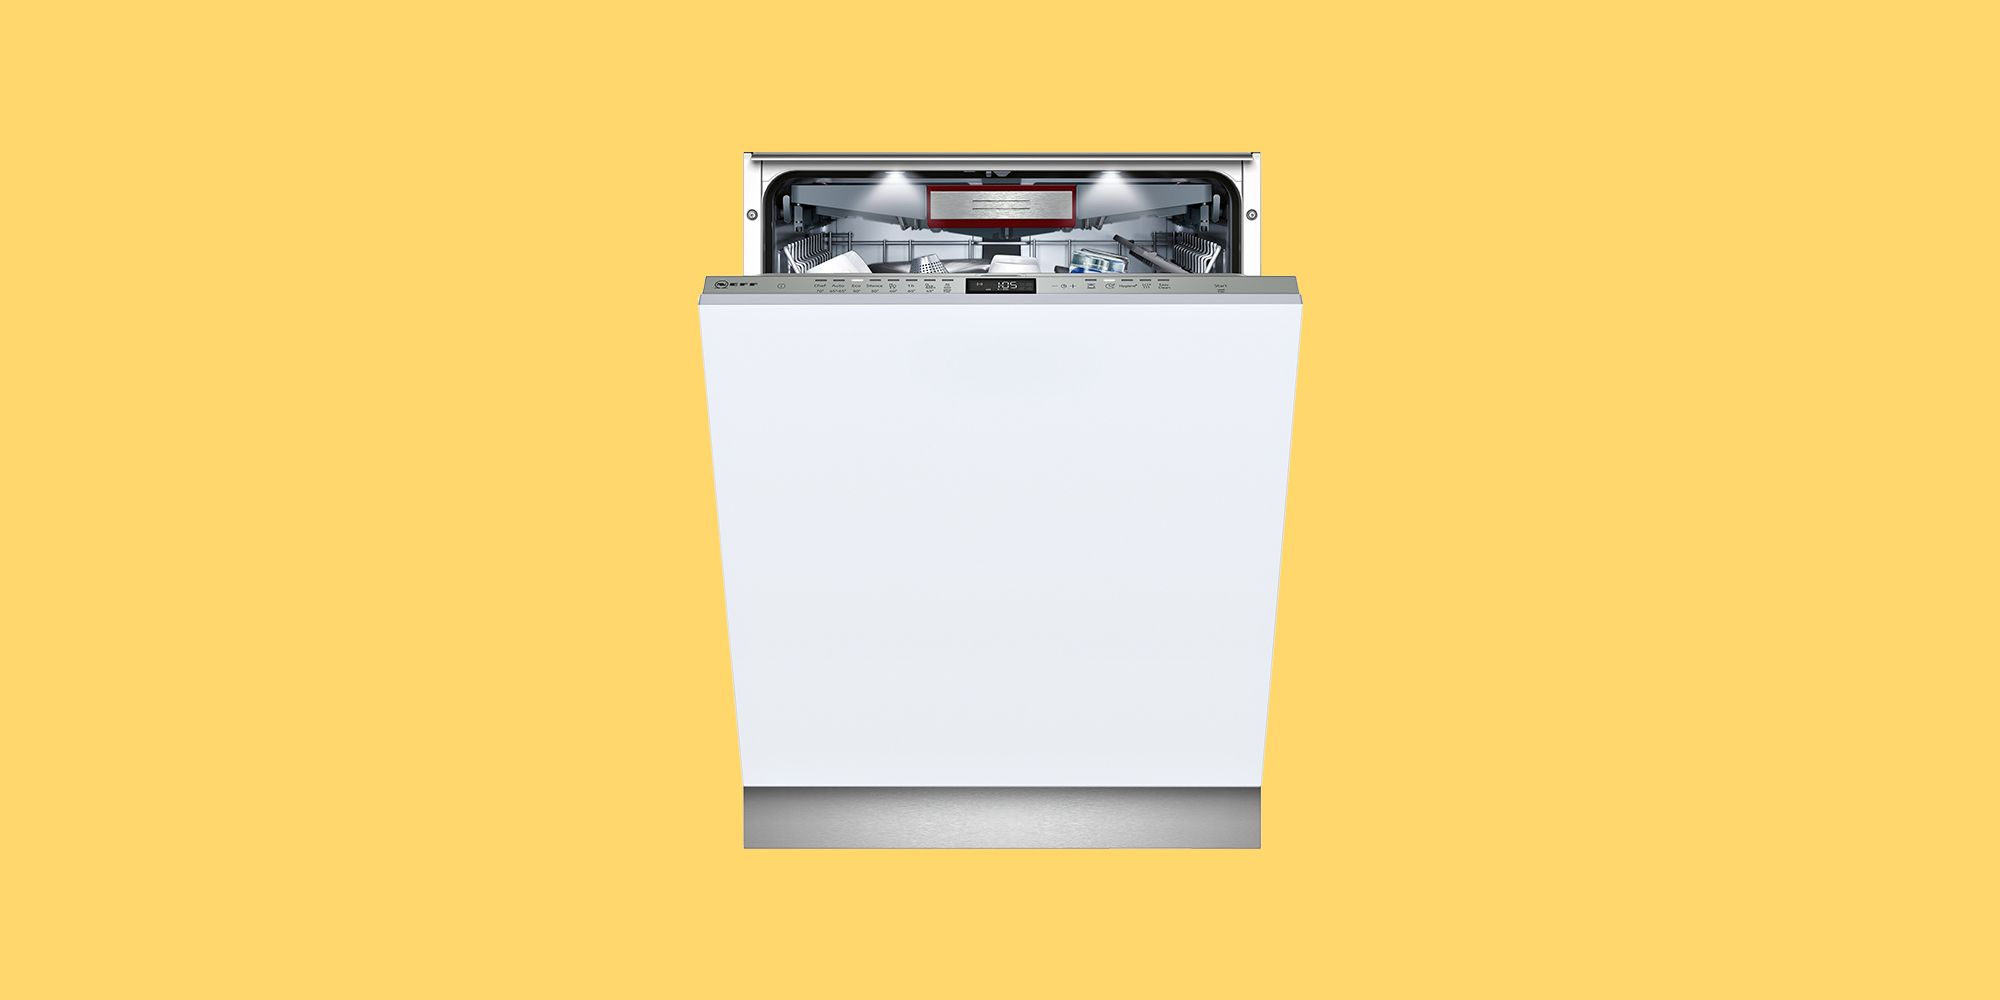 neff fully integrated dishwasher